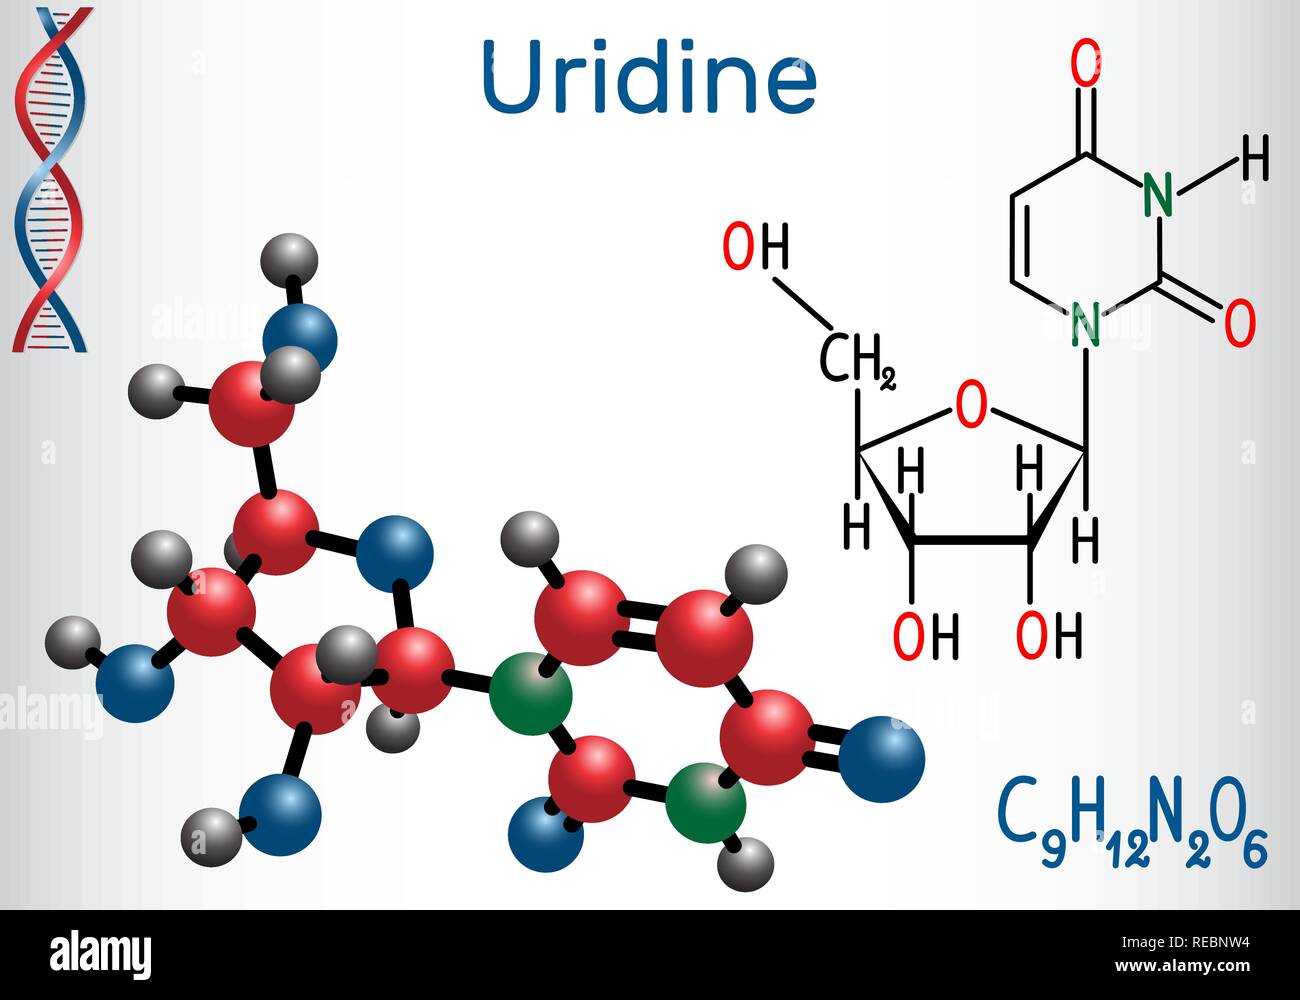 L'uridine - molécule nucléosidiques de la pyrimidine, sont des éléments importants de l'ARN. Formule chimique structurale et molécule modèle. Vector illustration Illustration de Vecteur